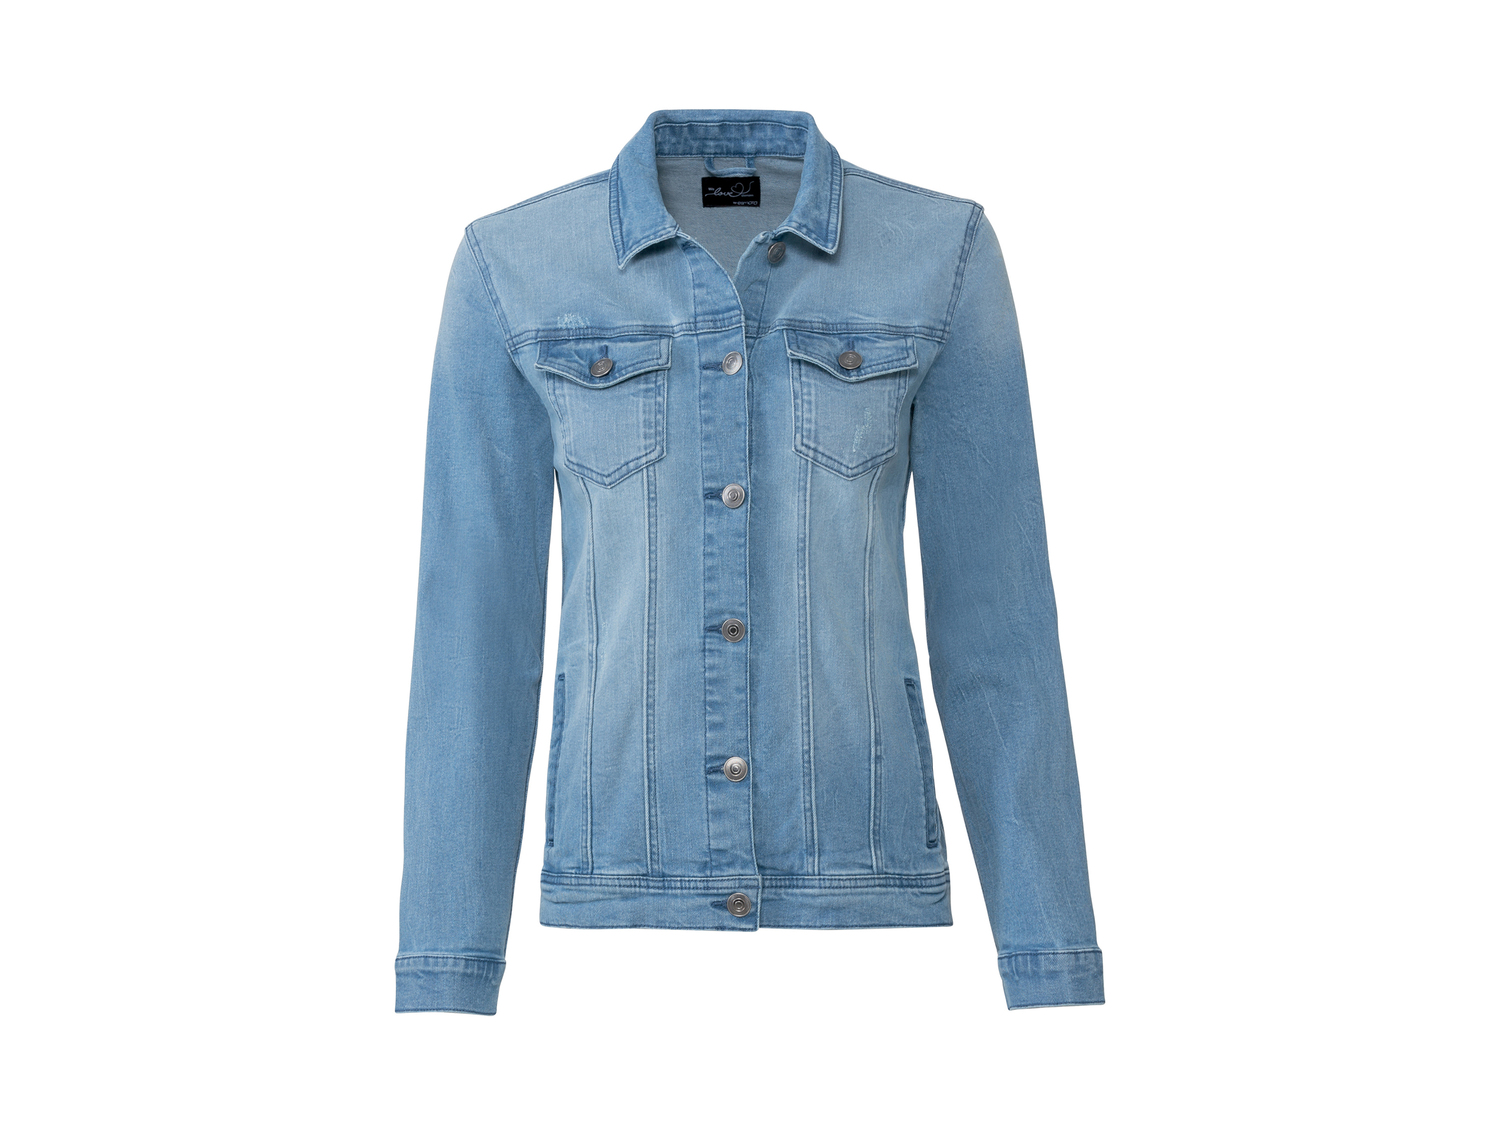 Giubbino in jeans da donna Esmara, prezzo 14.99 &#8364; 
Misure: 38-48
Taglie ...